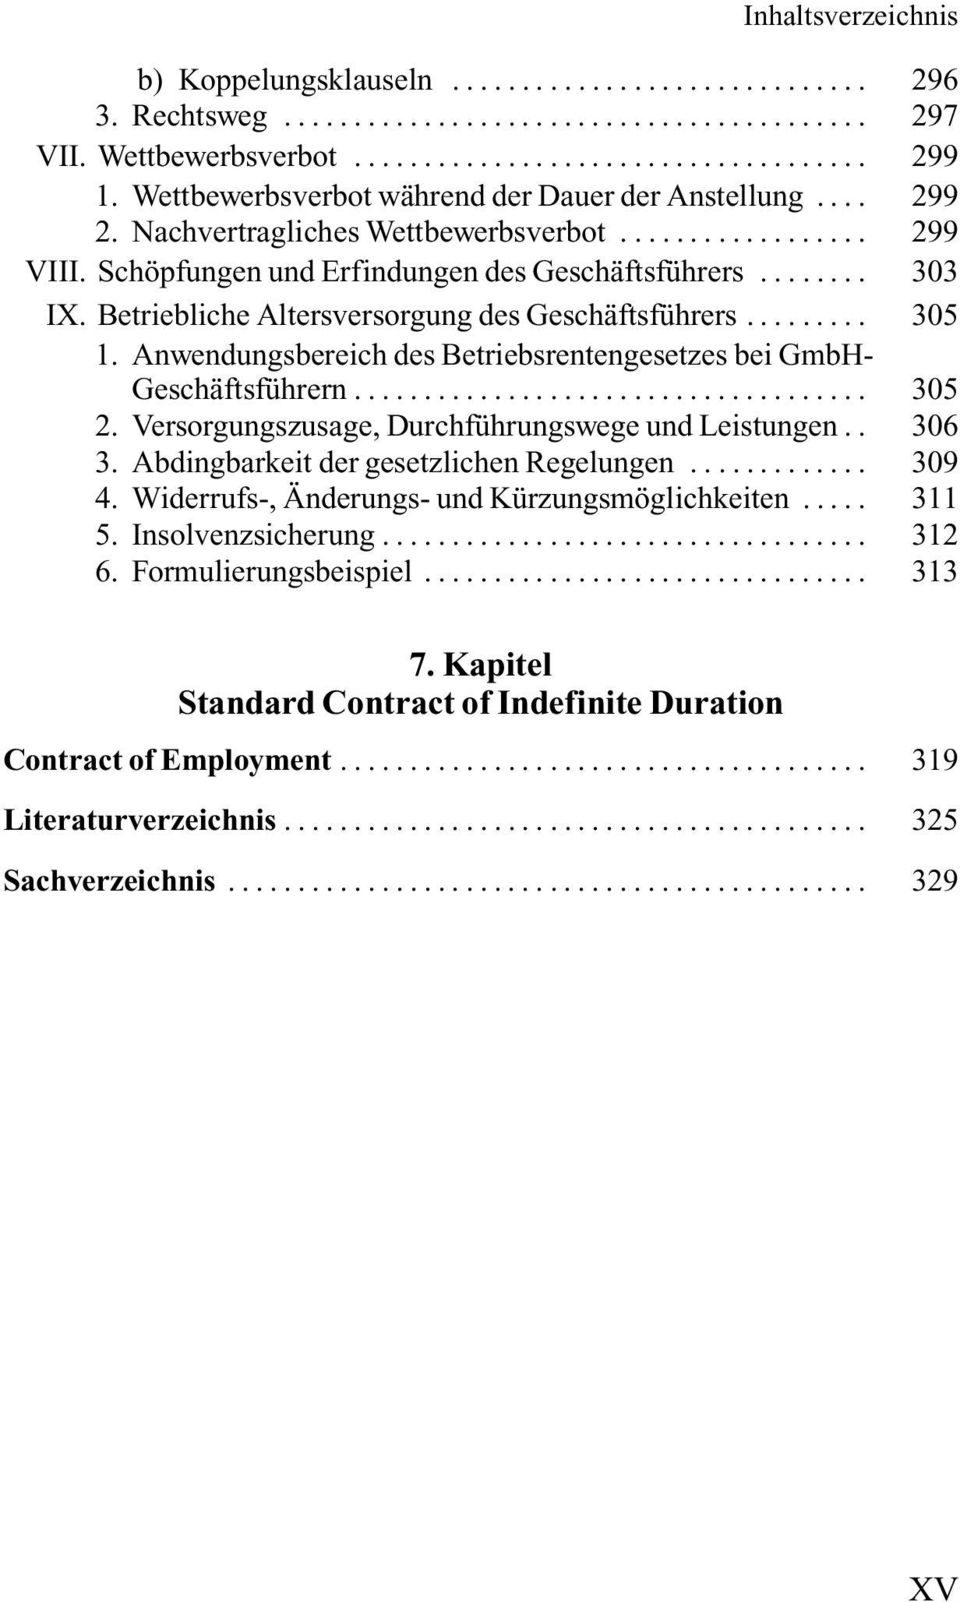 Anwendungsbereich des Betriebsrentengesetzes bei GmbH- Geschäftsführern..... 305 2. Versorgungszusage, Durchführungswege und Leistungen.. 306 3. Abdingbarkeit der gesetzlichen Regelungen..... 309 4.